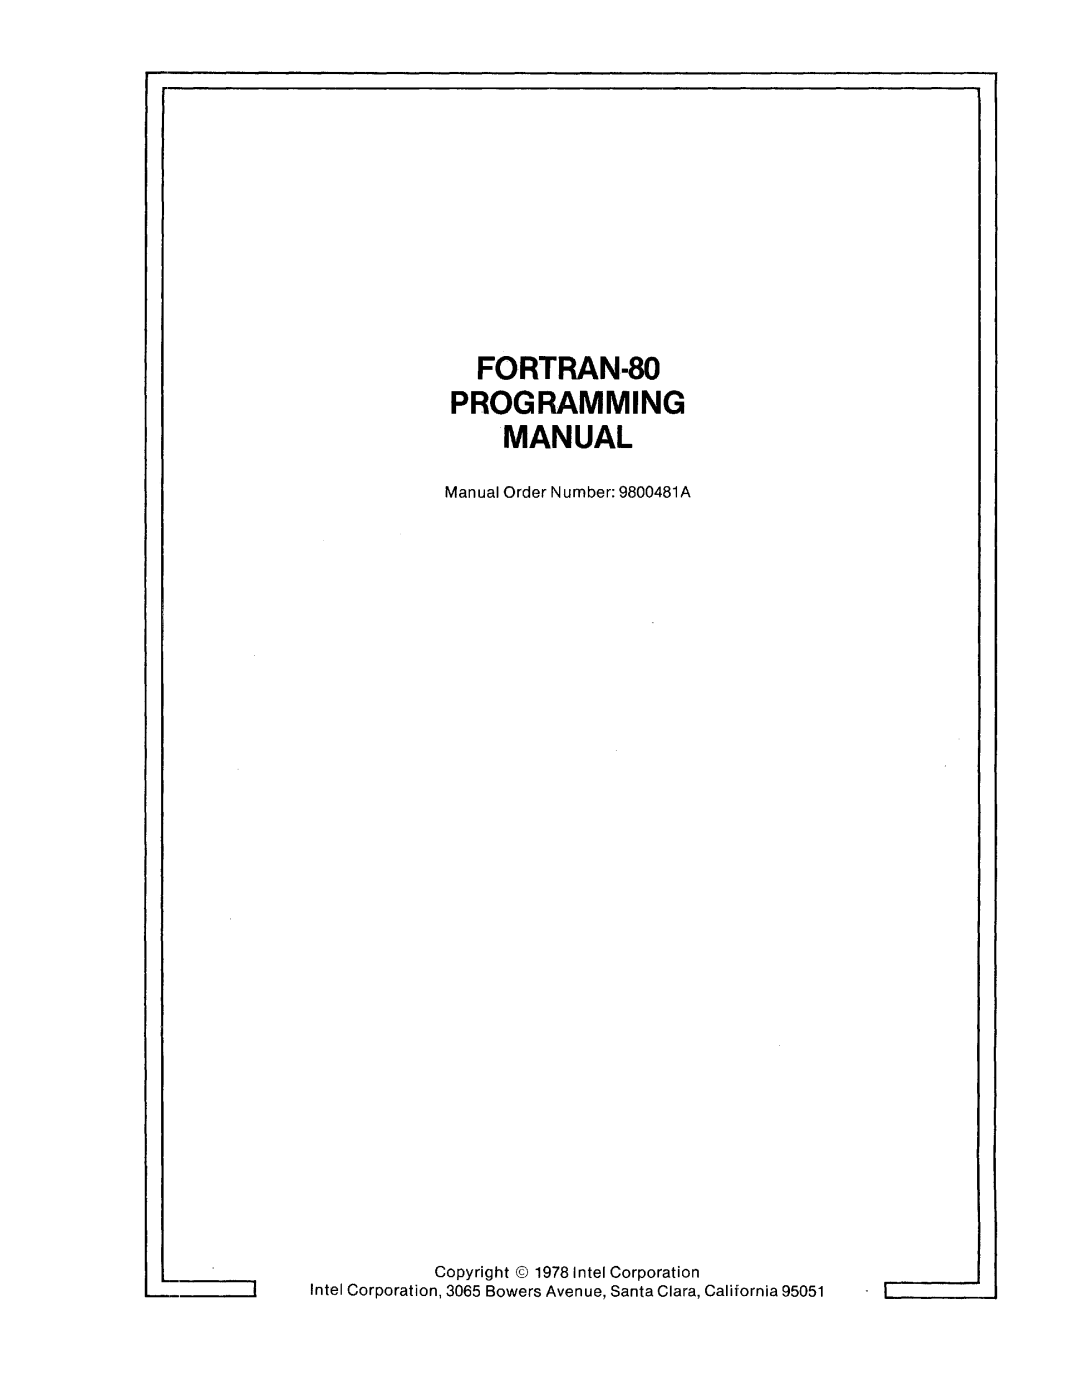 Intel fortran-80 manual Fortran-Soprogramming Manual, Manual Order Number: 9800481 A, Copyright 1978 Intel Corporation 